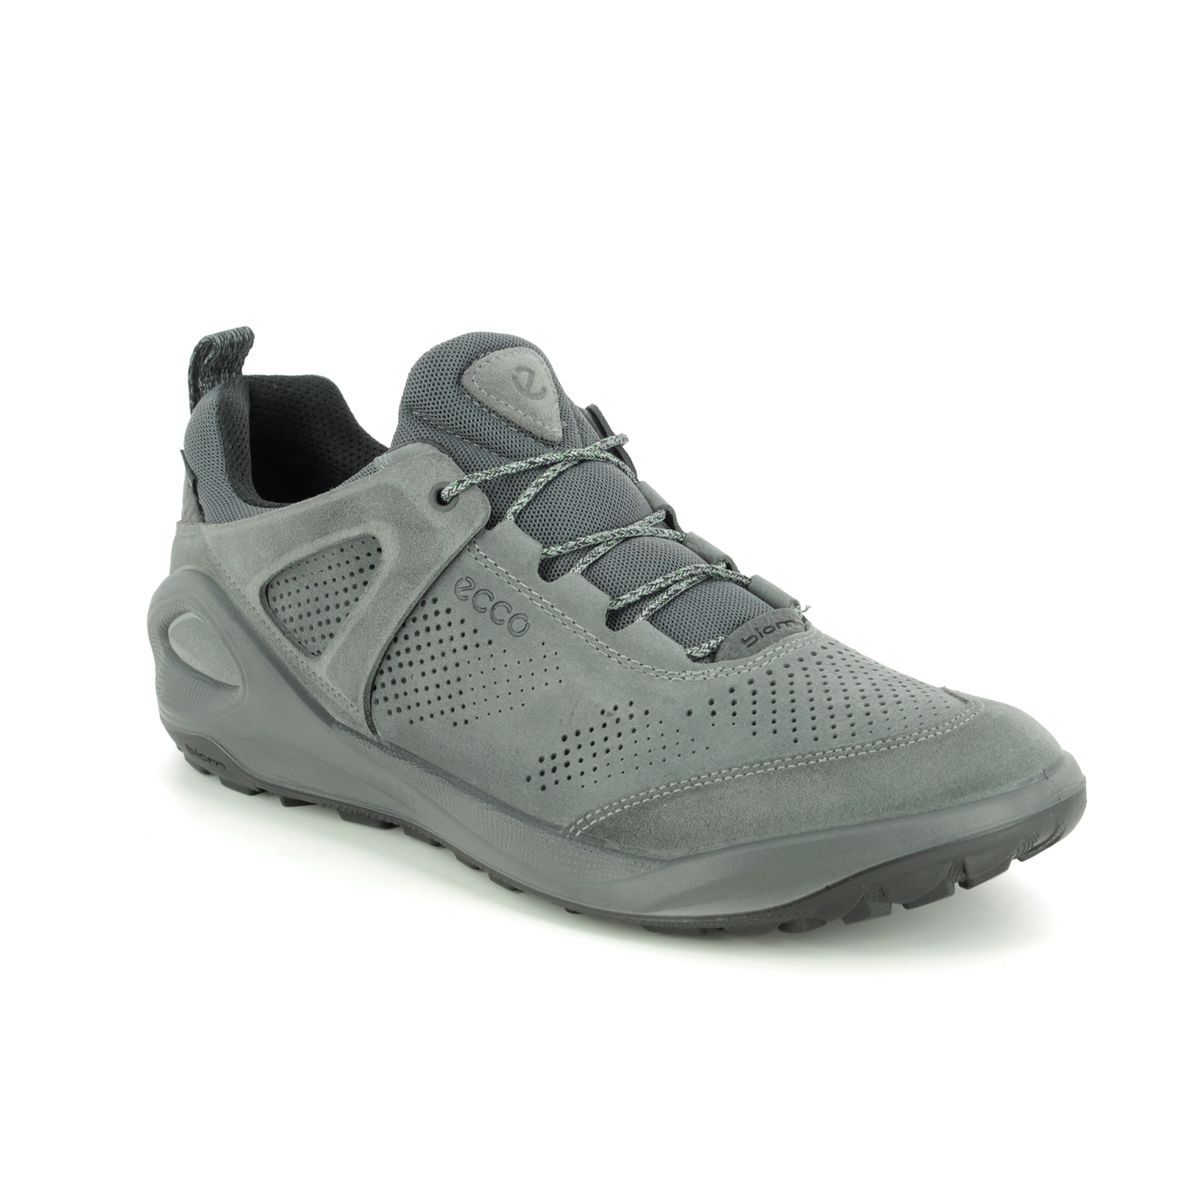 ECCO Biom 2go Gore 801904-52664 Grey Suede comfort shoes